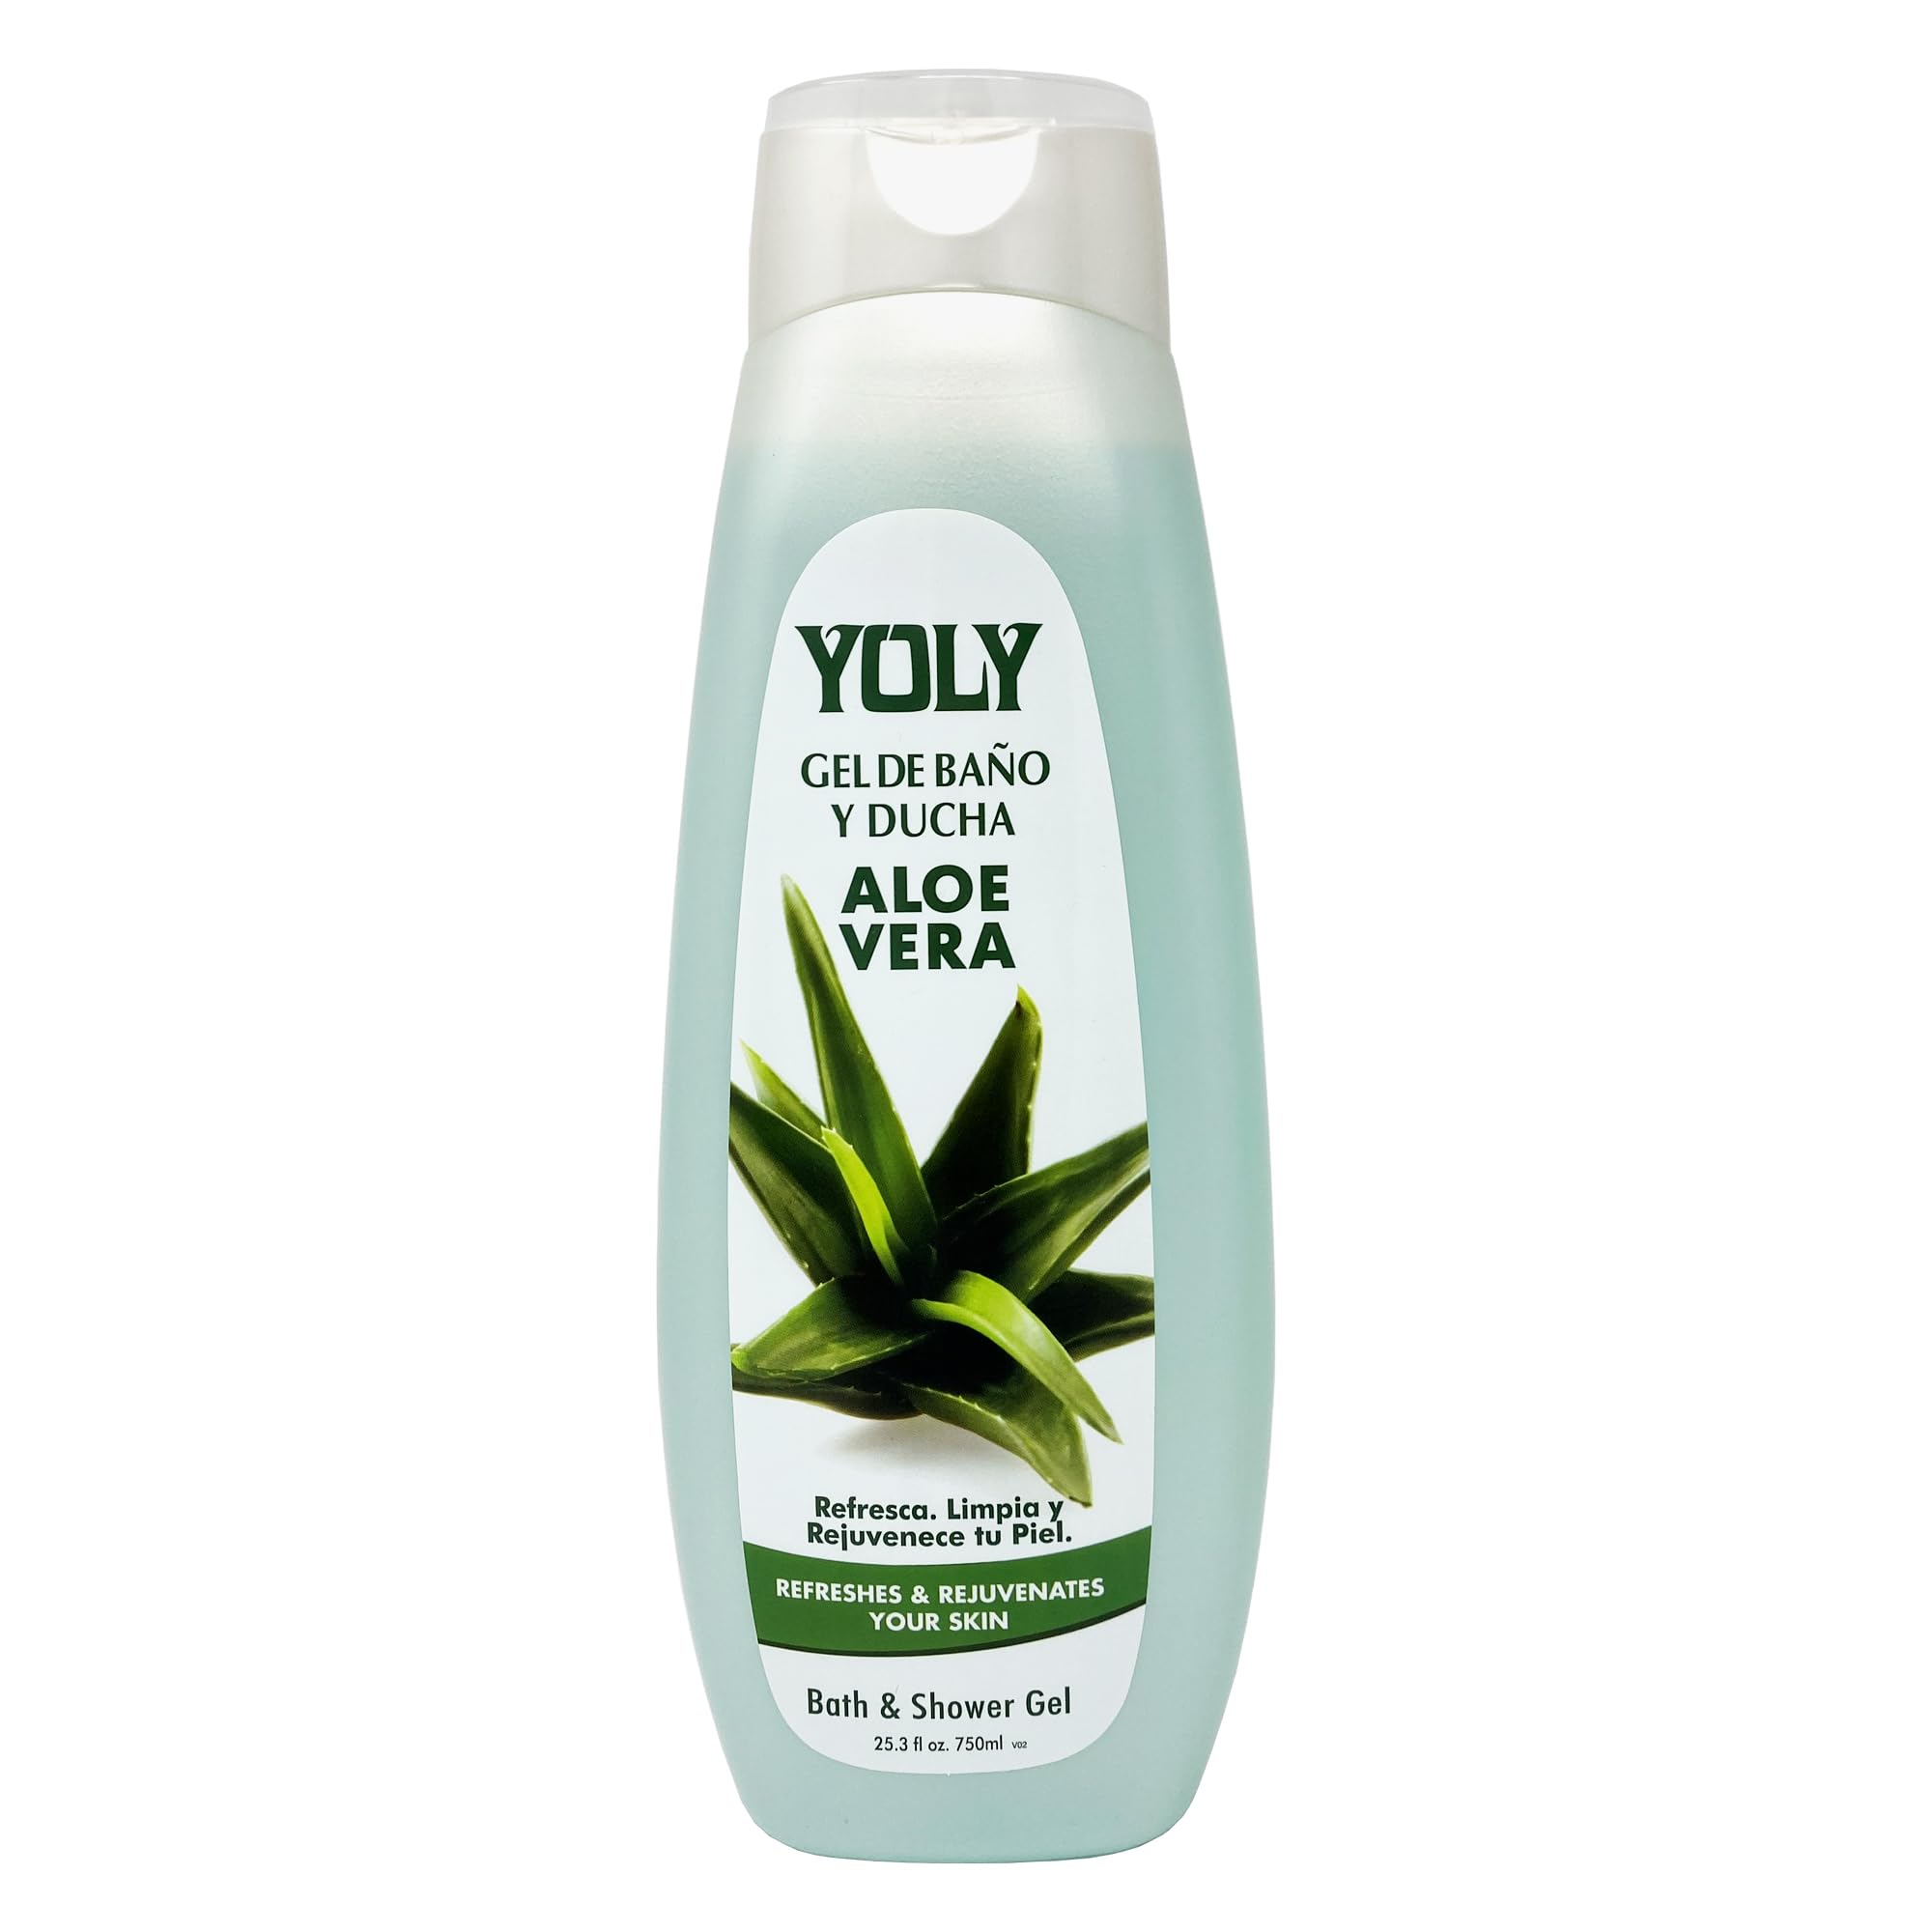 YOLY Aloe Vera Moisturizing Body Wash for Dry & Sensitive Skin - Refreshing & Rejuvenating, 25.3 Fl Oz